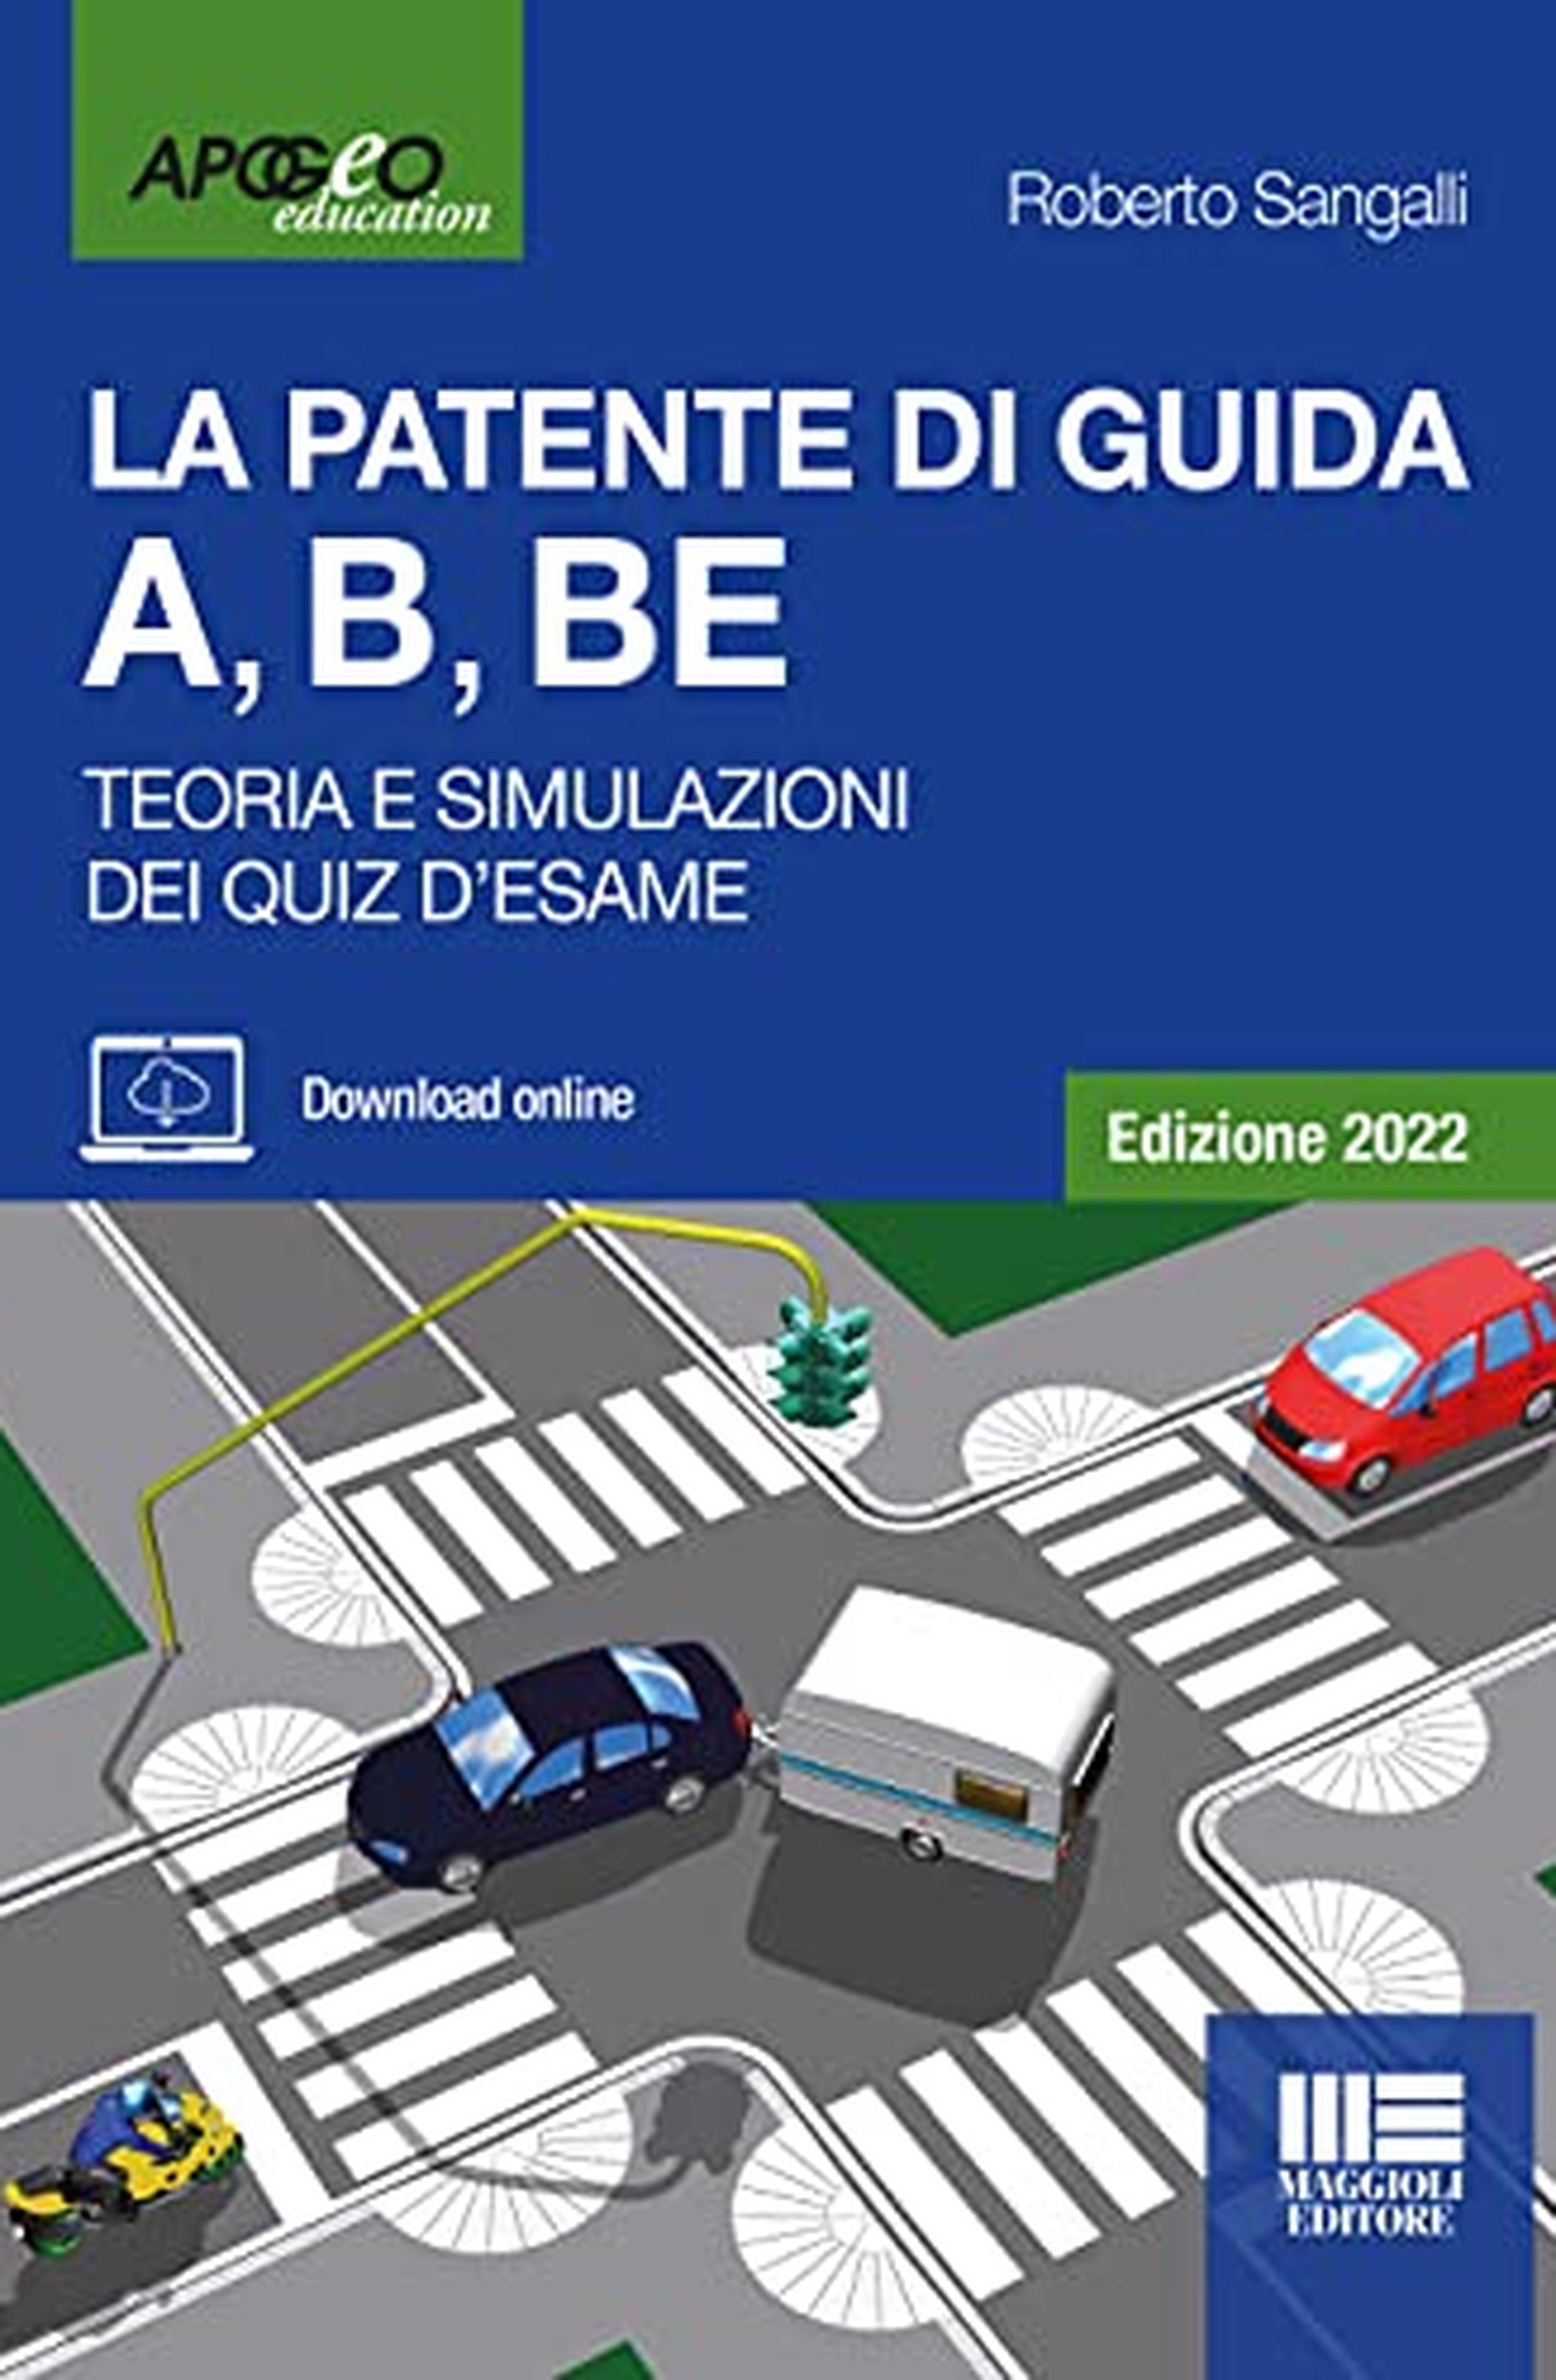 La Patente Di Guida A, B, BE - Edizione 2022. Testo e Simulazioni dei Quiz aggiornati alle Nuove Modalità d'Esame in vigore